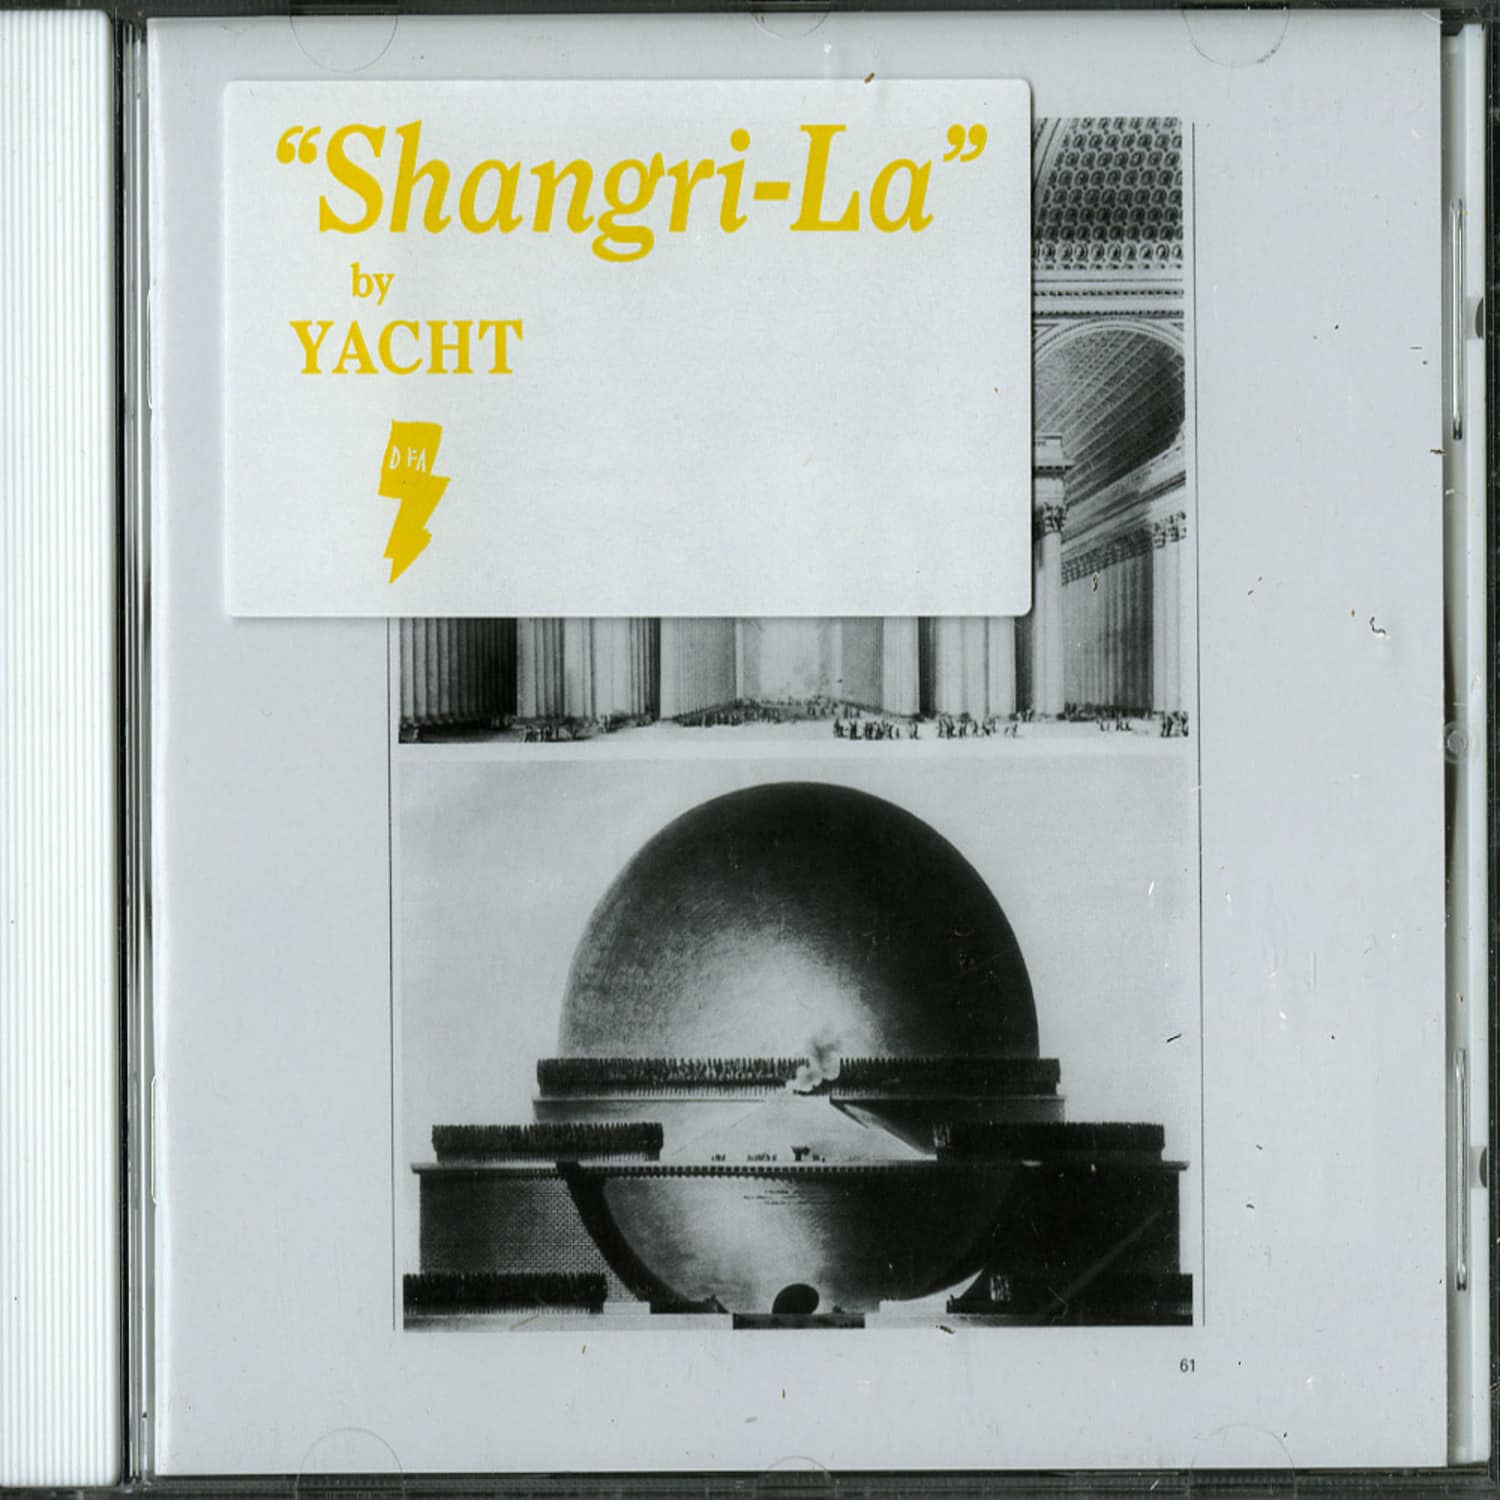 Yacht - SHANGRI-LA 